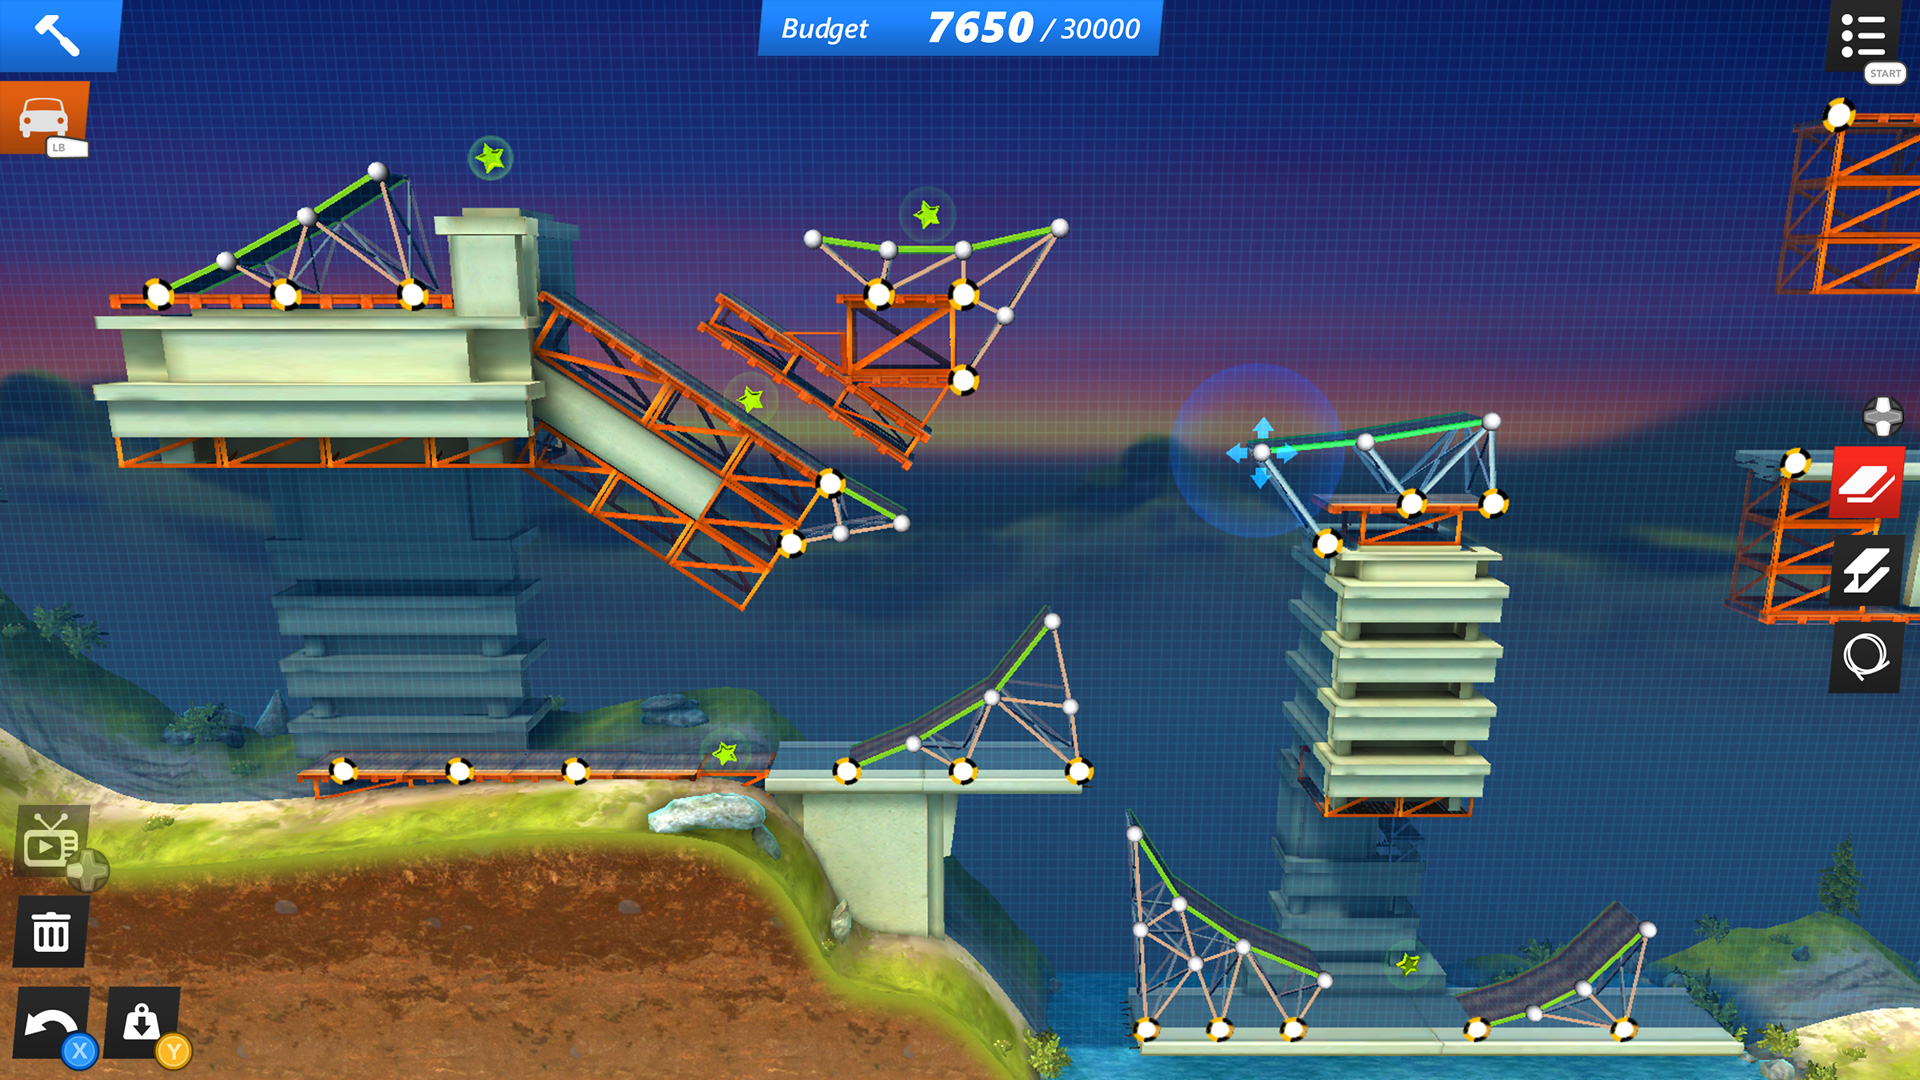 bridge constructor game